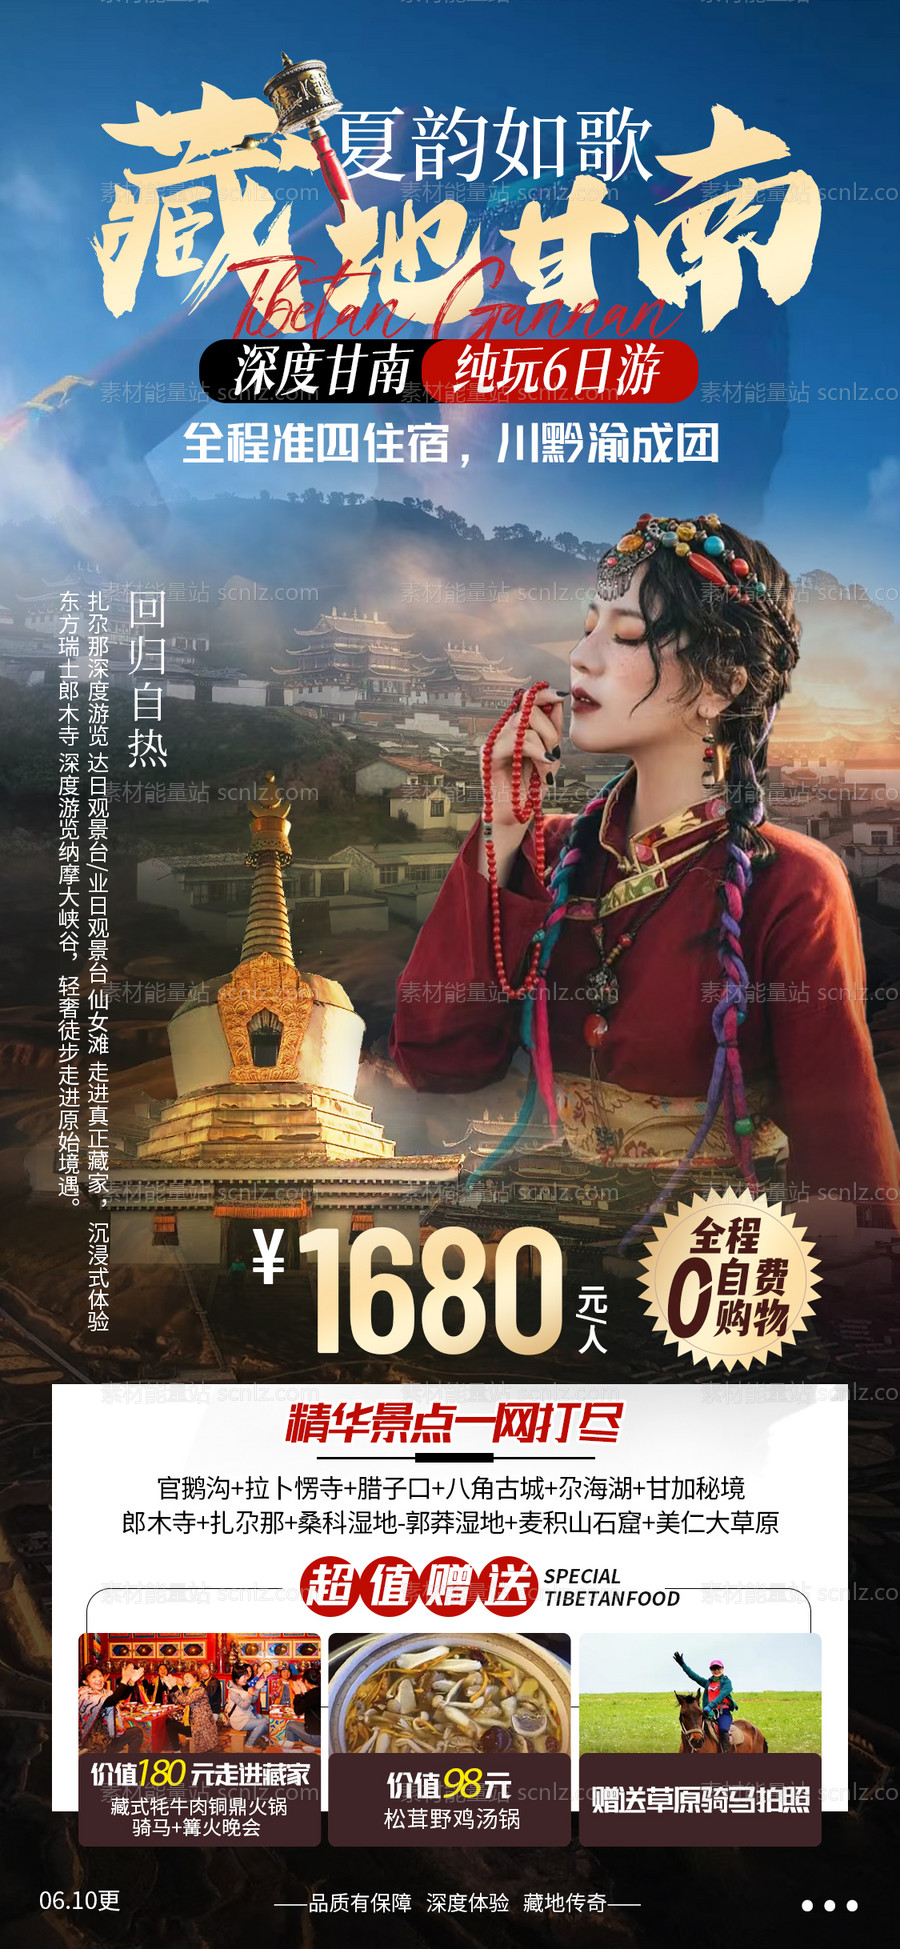 素材能量站-藏地甘南旅游海报